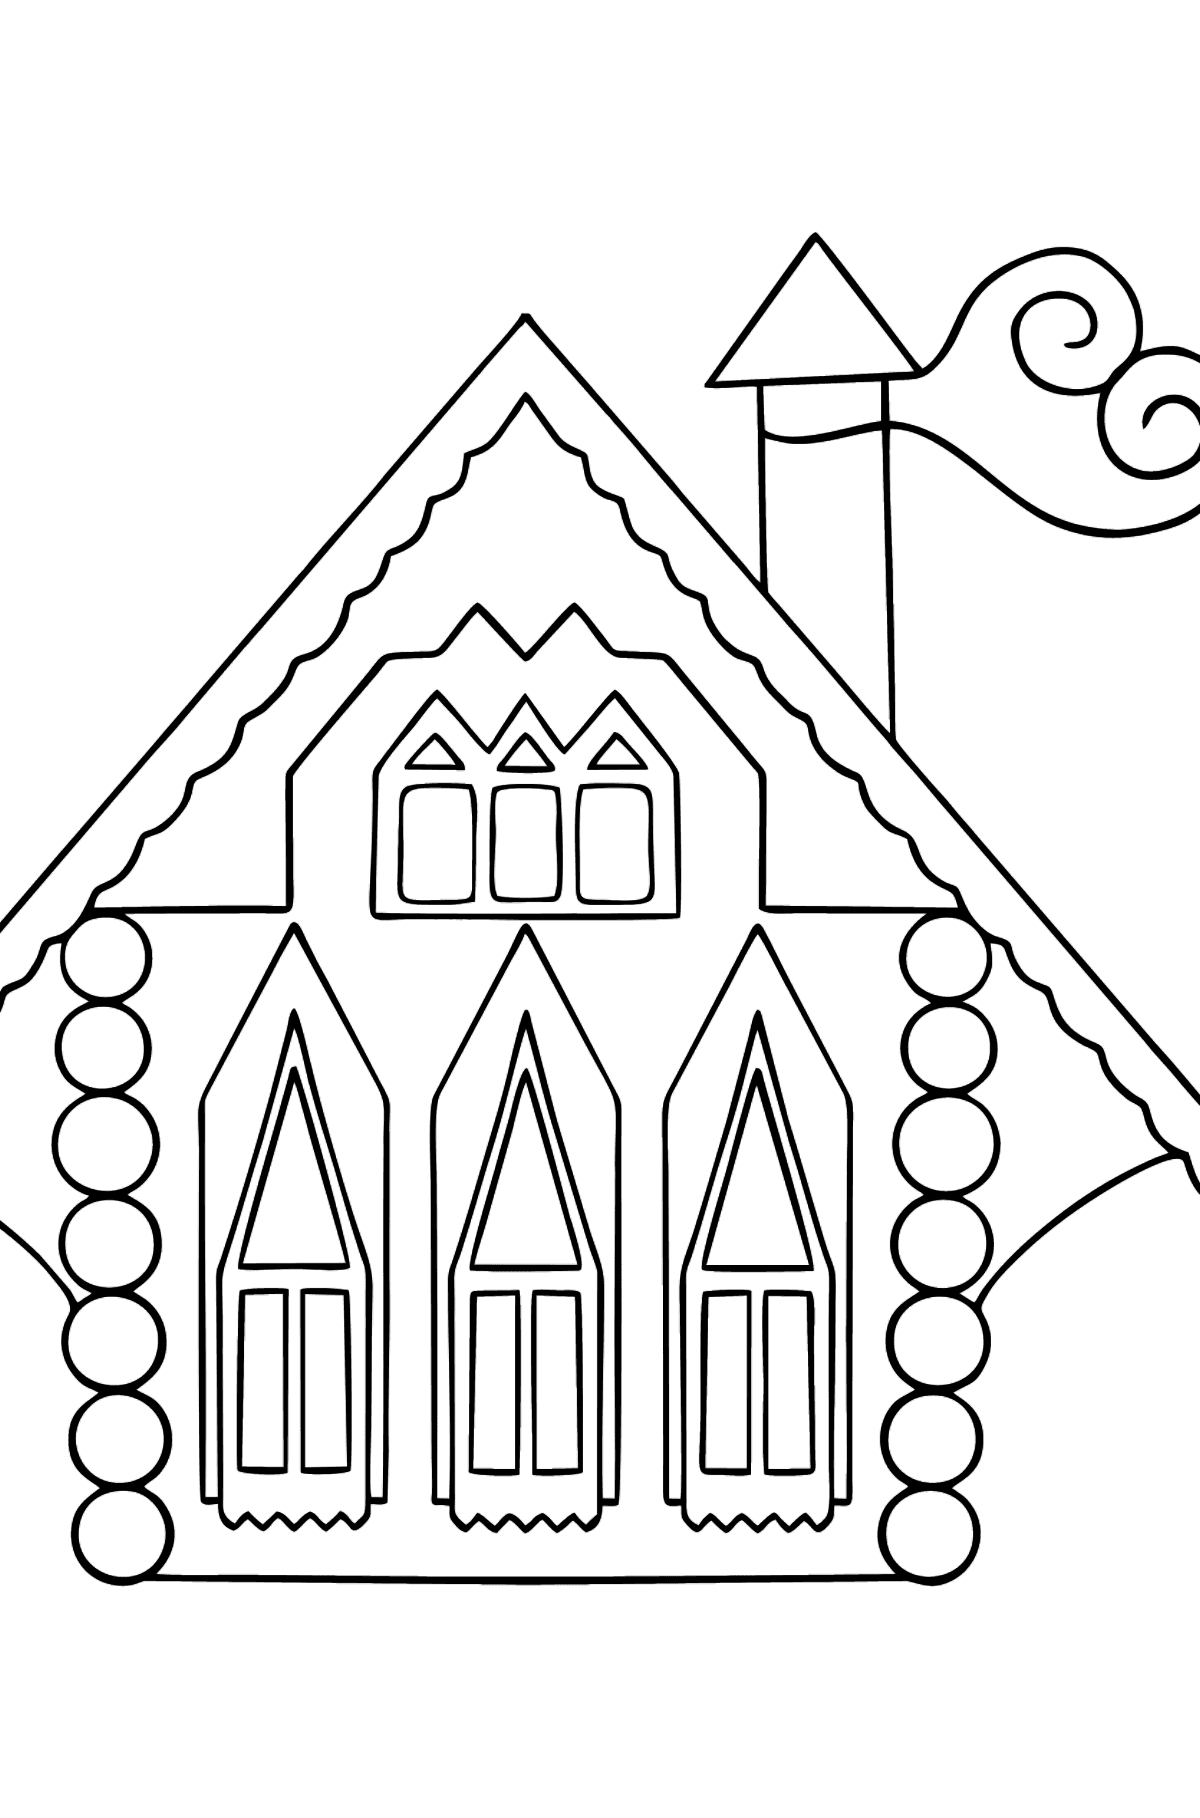 Desen de colorat casa curcubeu (dificil) - Desene de colorat pentru copii